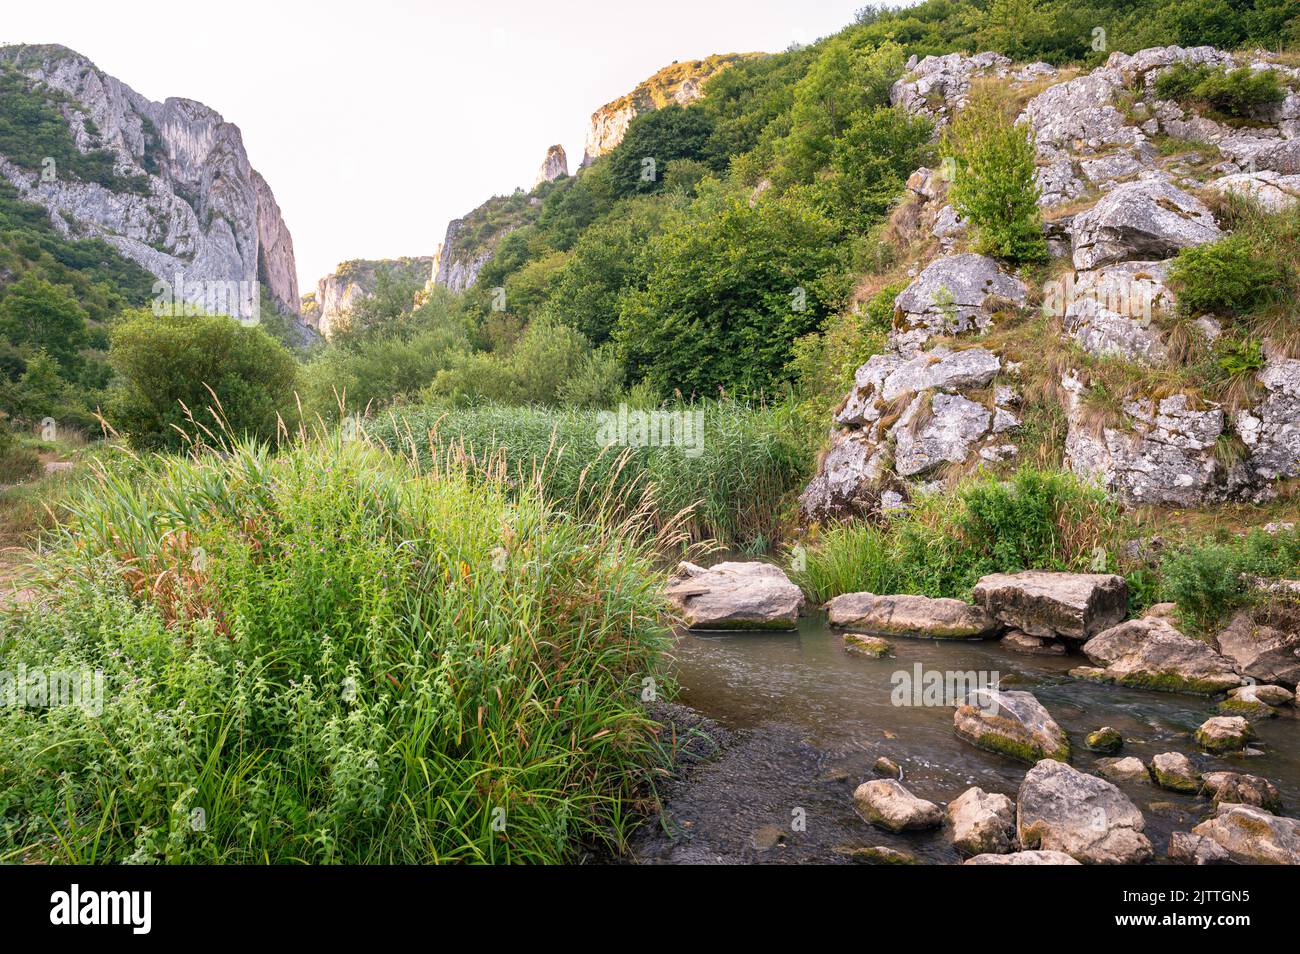 Scenic view of a brook near Turda gorge in Transylvania, Romania Stock Photo